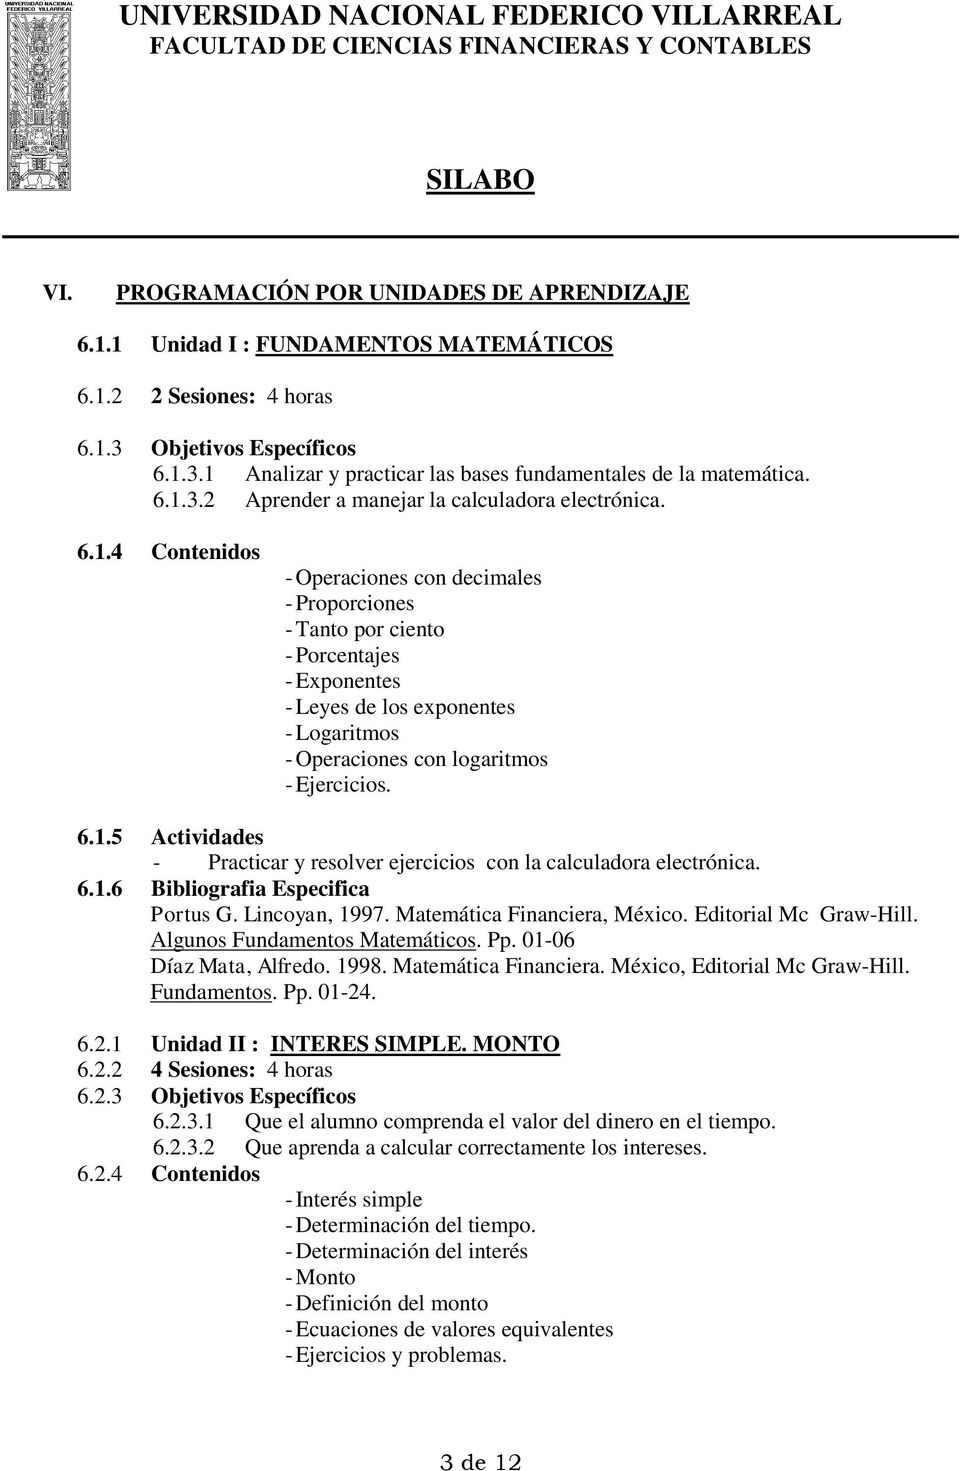 6.1.5 Actividades - Practicar y resolver ejercicios con la calculadora electrónica. 6.1.6 Bibliografia Especifica Portus G. Lincoyan, 1997. Matemática Financiera, México. Editorial Mc Graw-Hill.